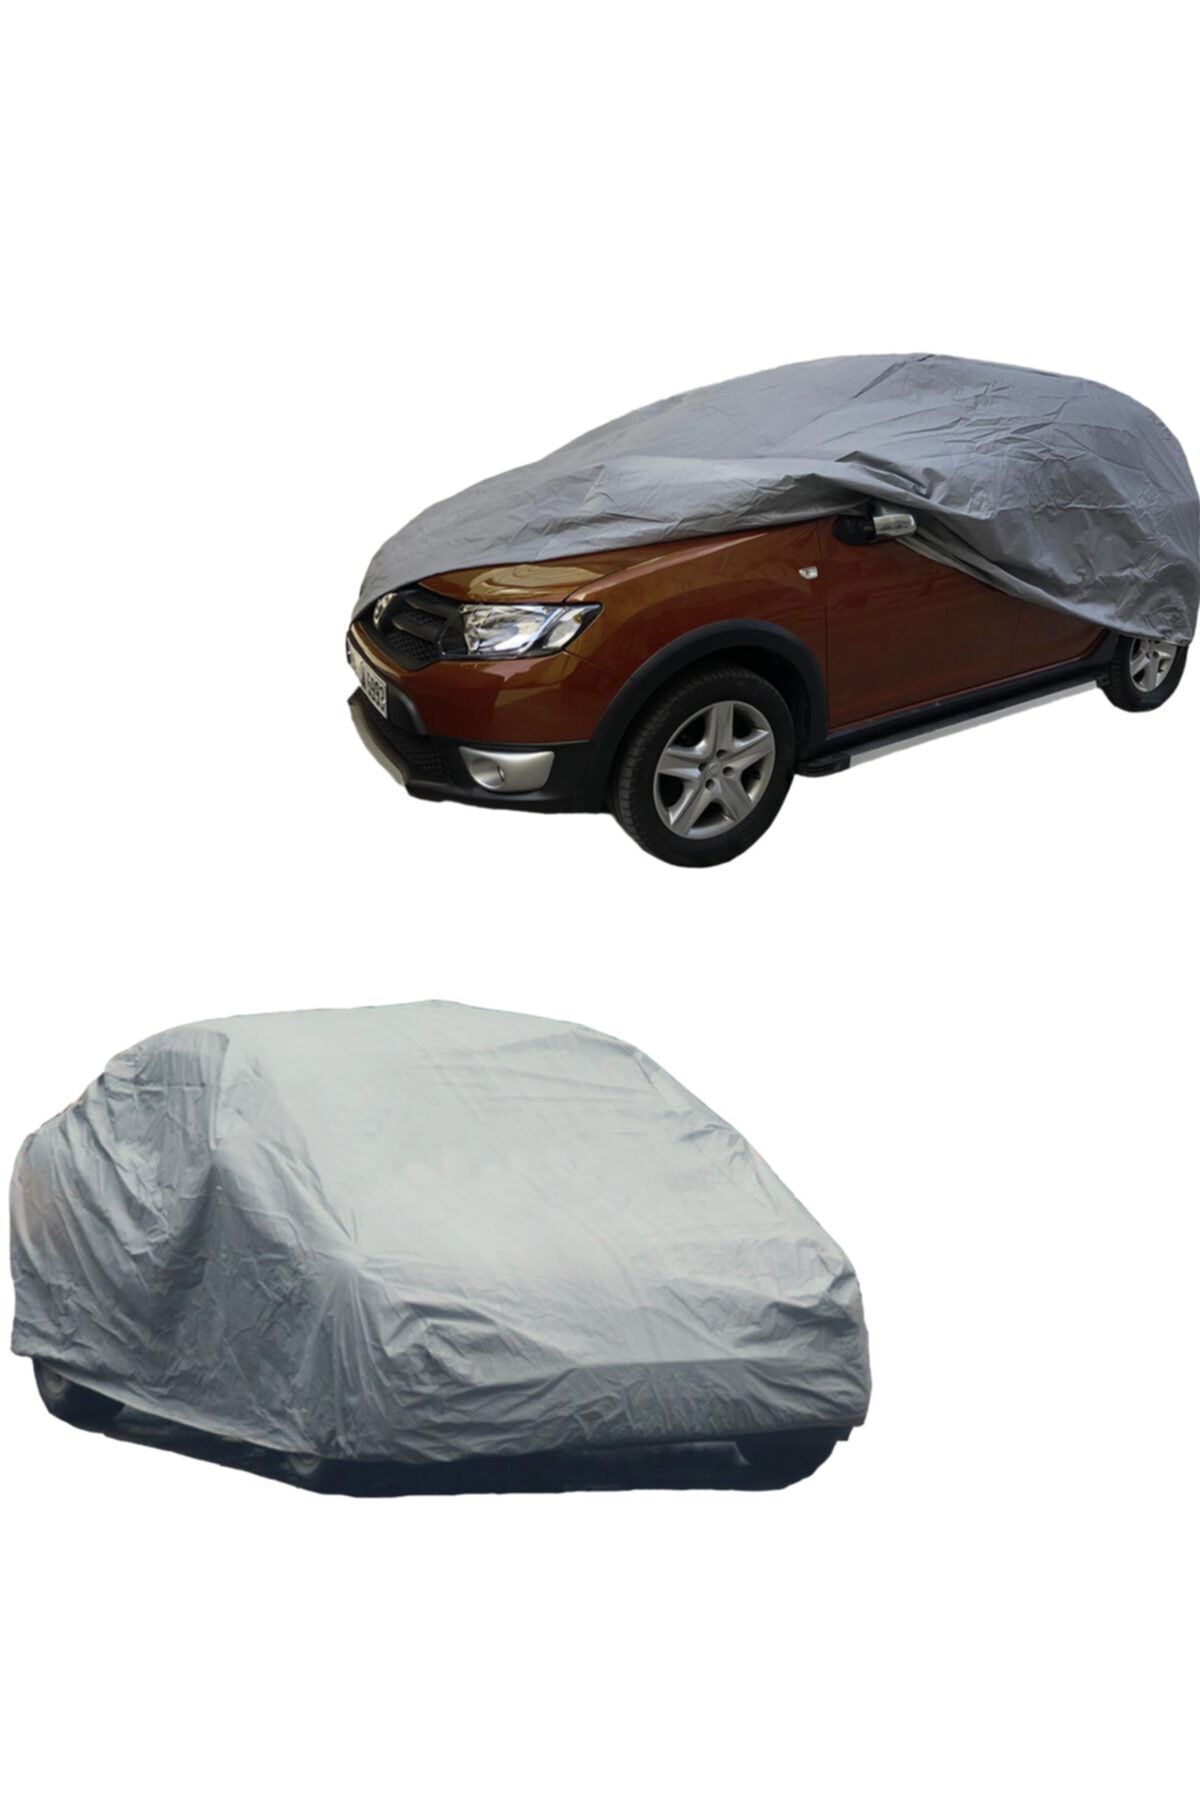 AUTOKN Dacia Logan Sedan Car Tarpaulin, Cover, Tent - Trendyol